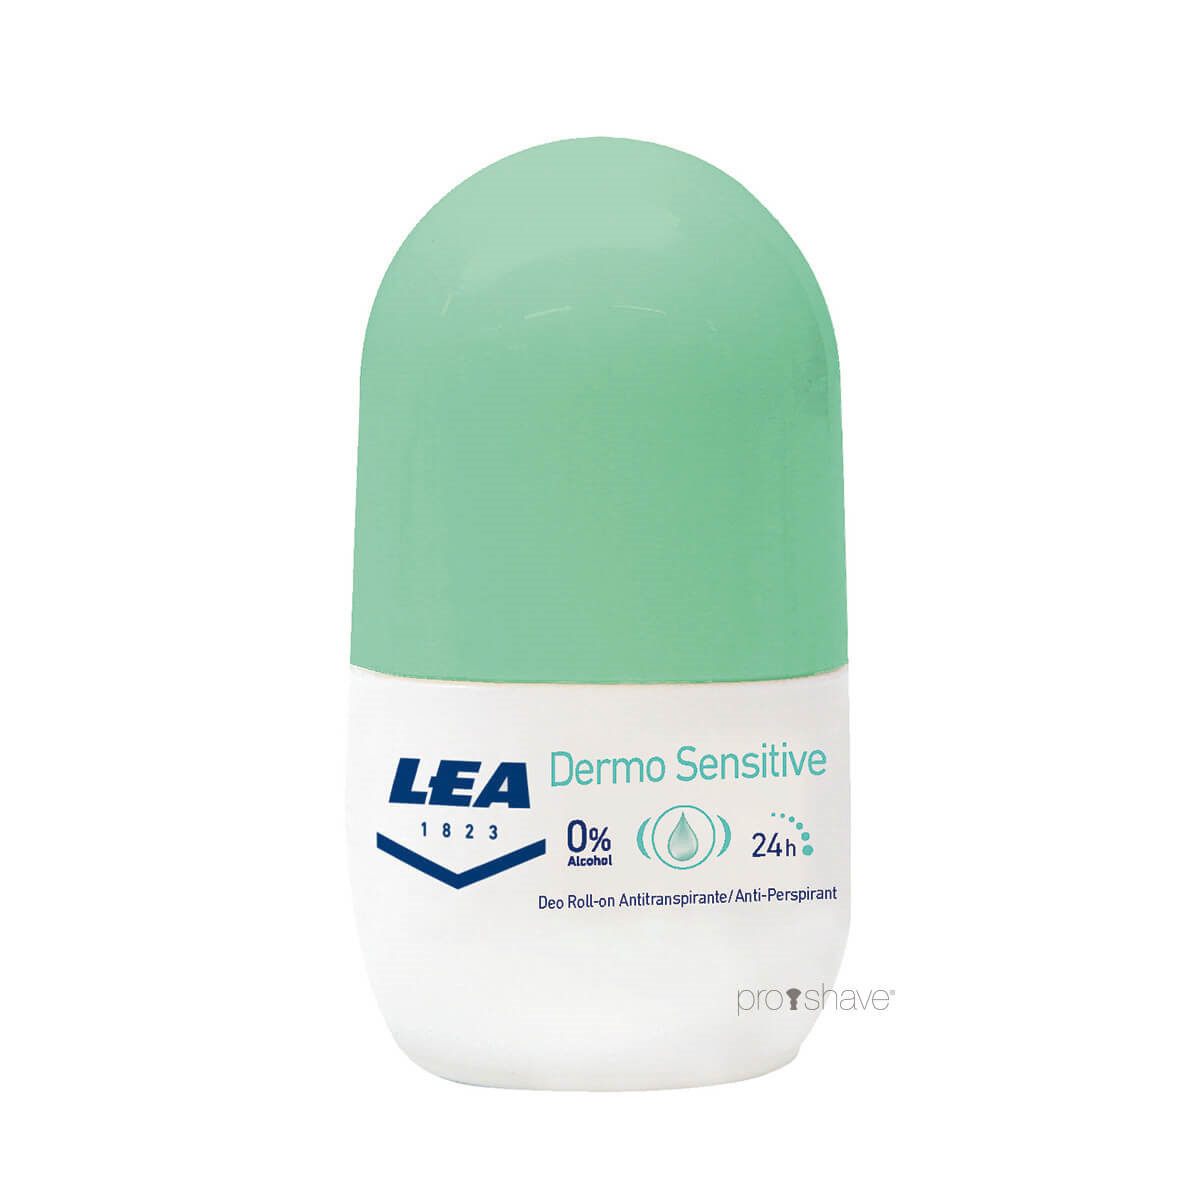 Se LEA Deo Roll on, Dermo Sensitive, Rejsestørrelse, 20 ml. hos Proshave